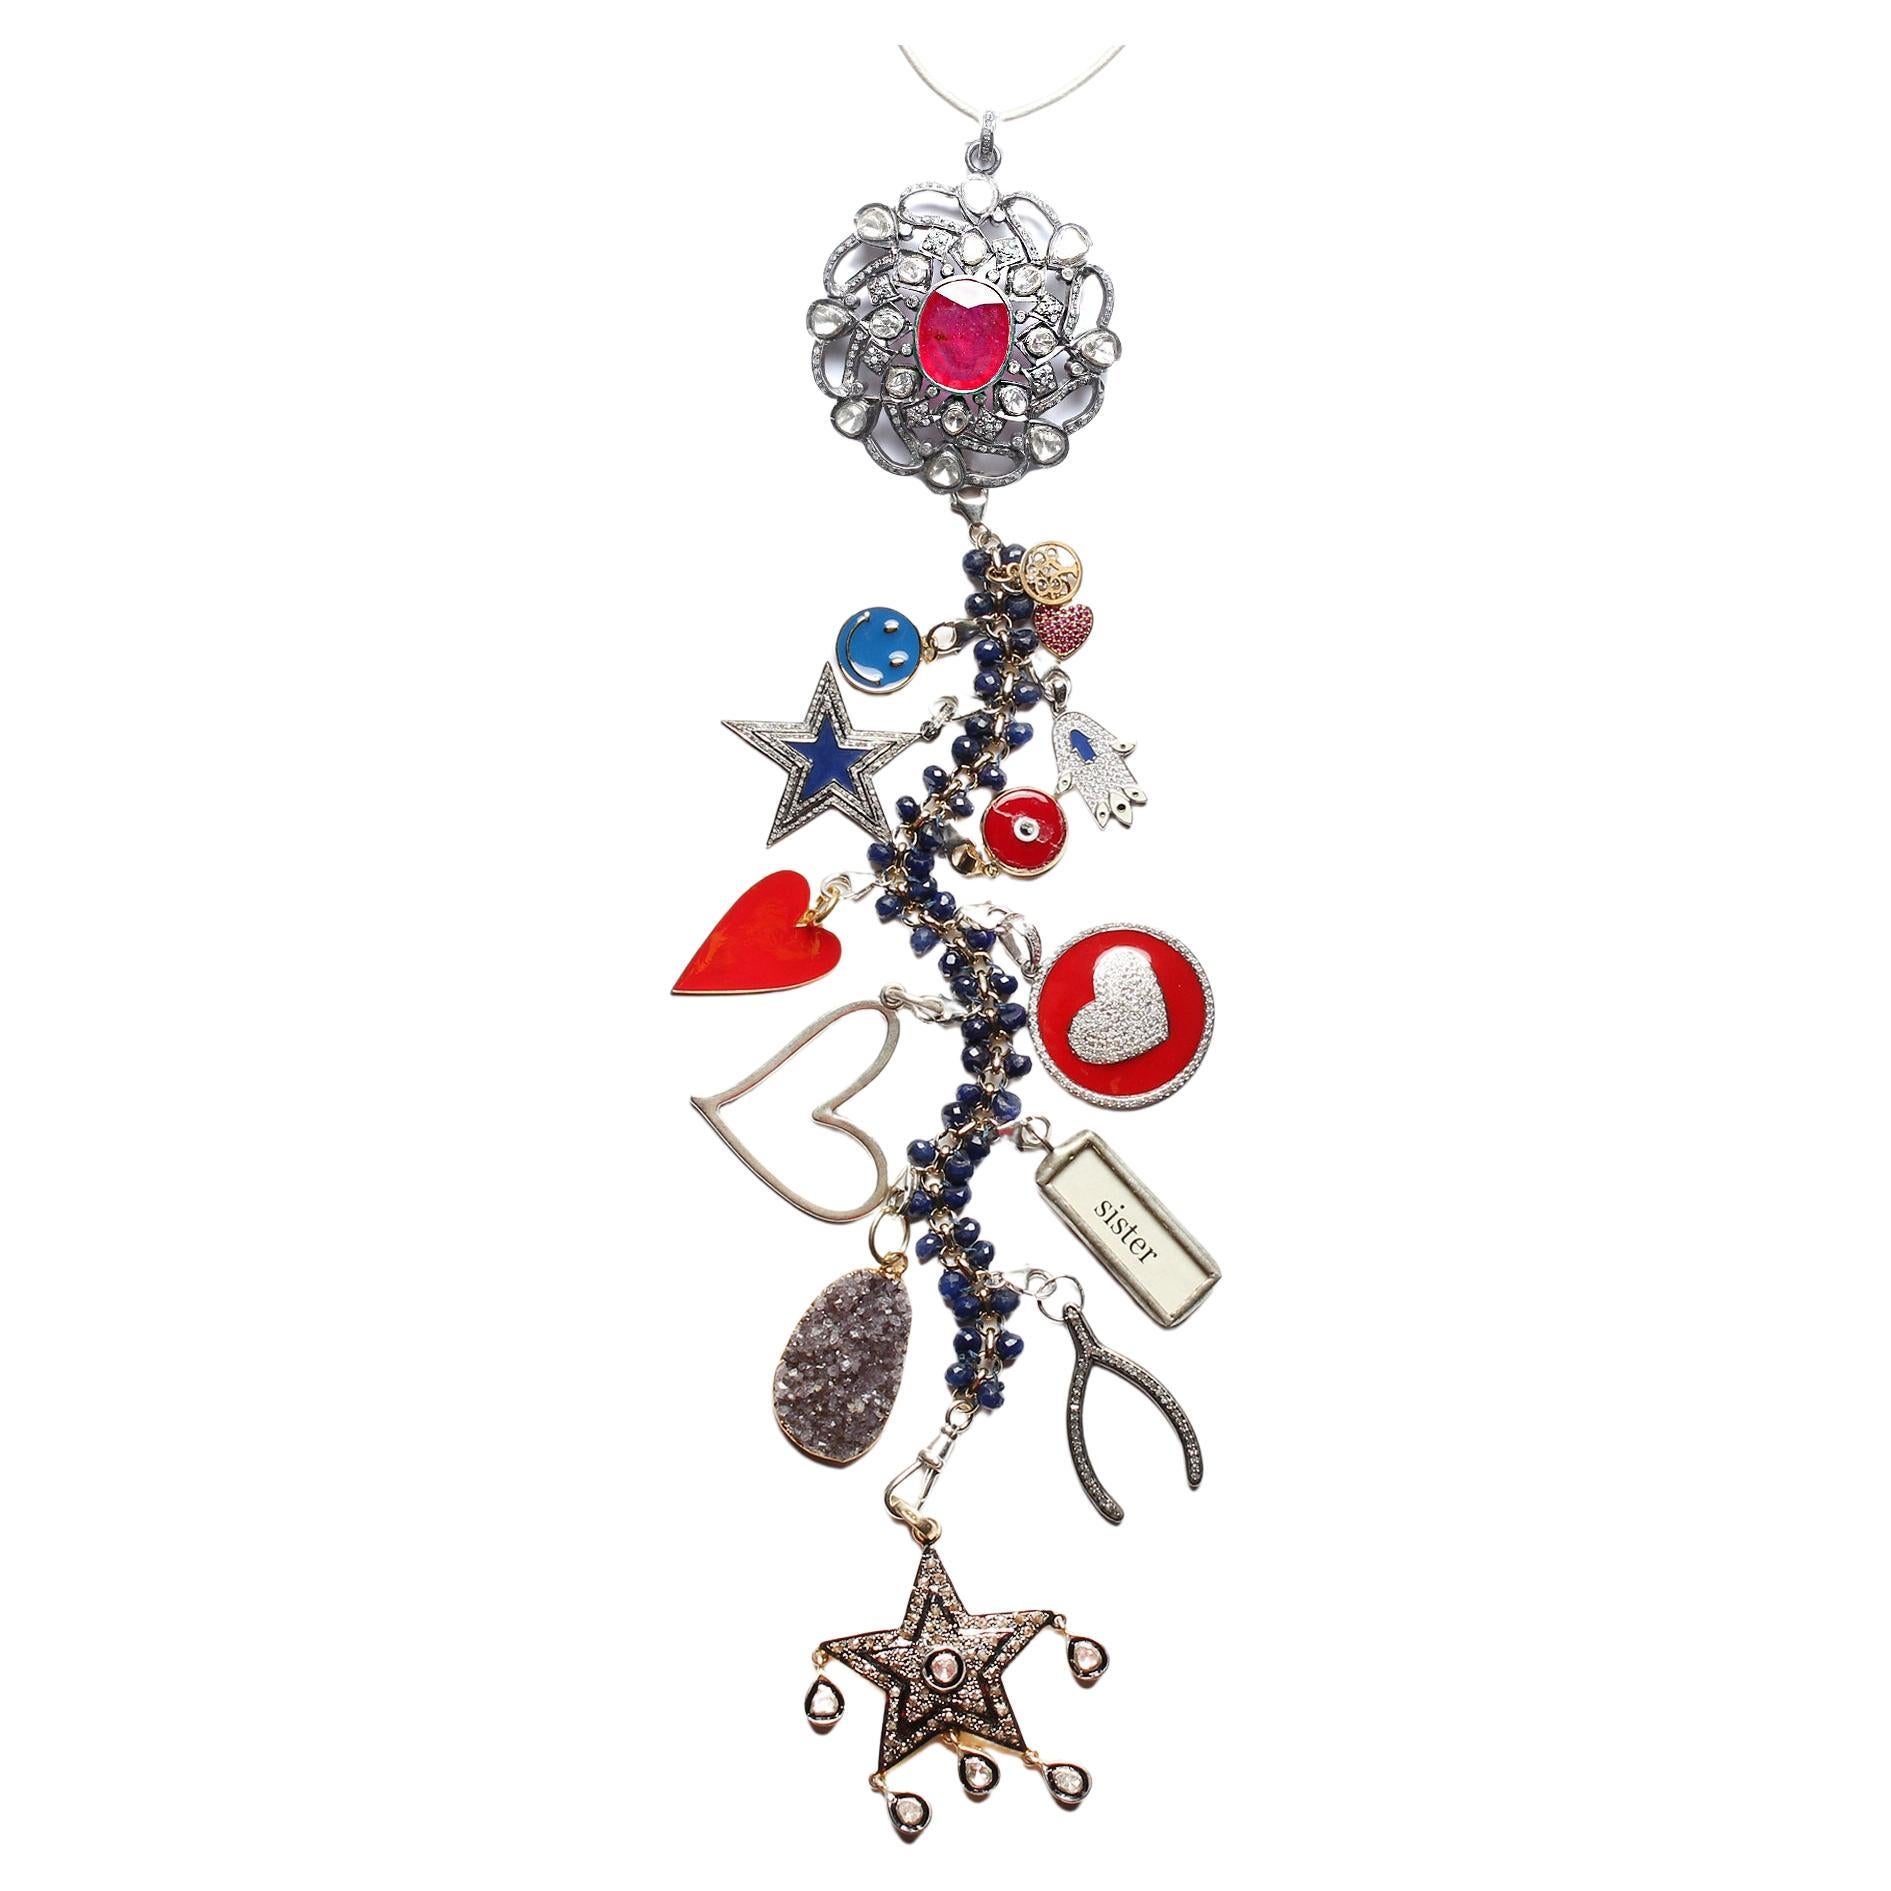 Clarissa Bronfman, collier «tsy » en forme d'arbre en or, diamant, rubis et tourmaline